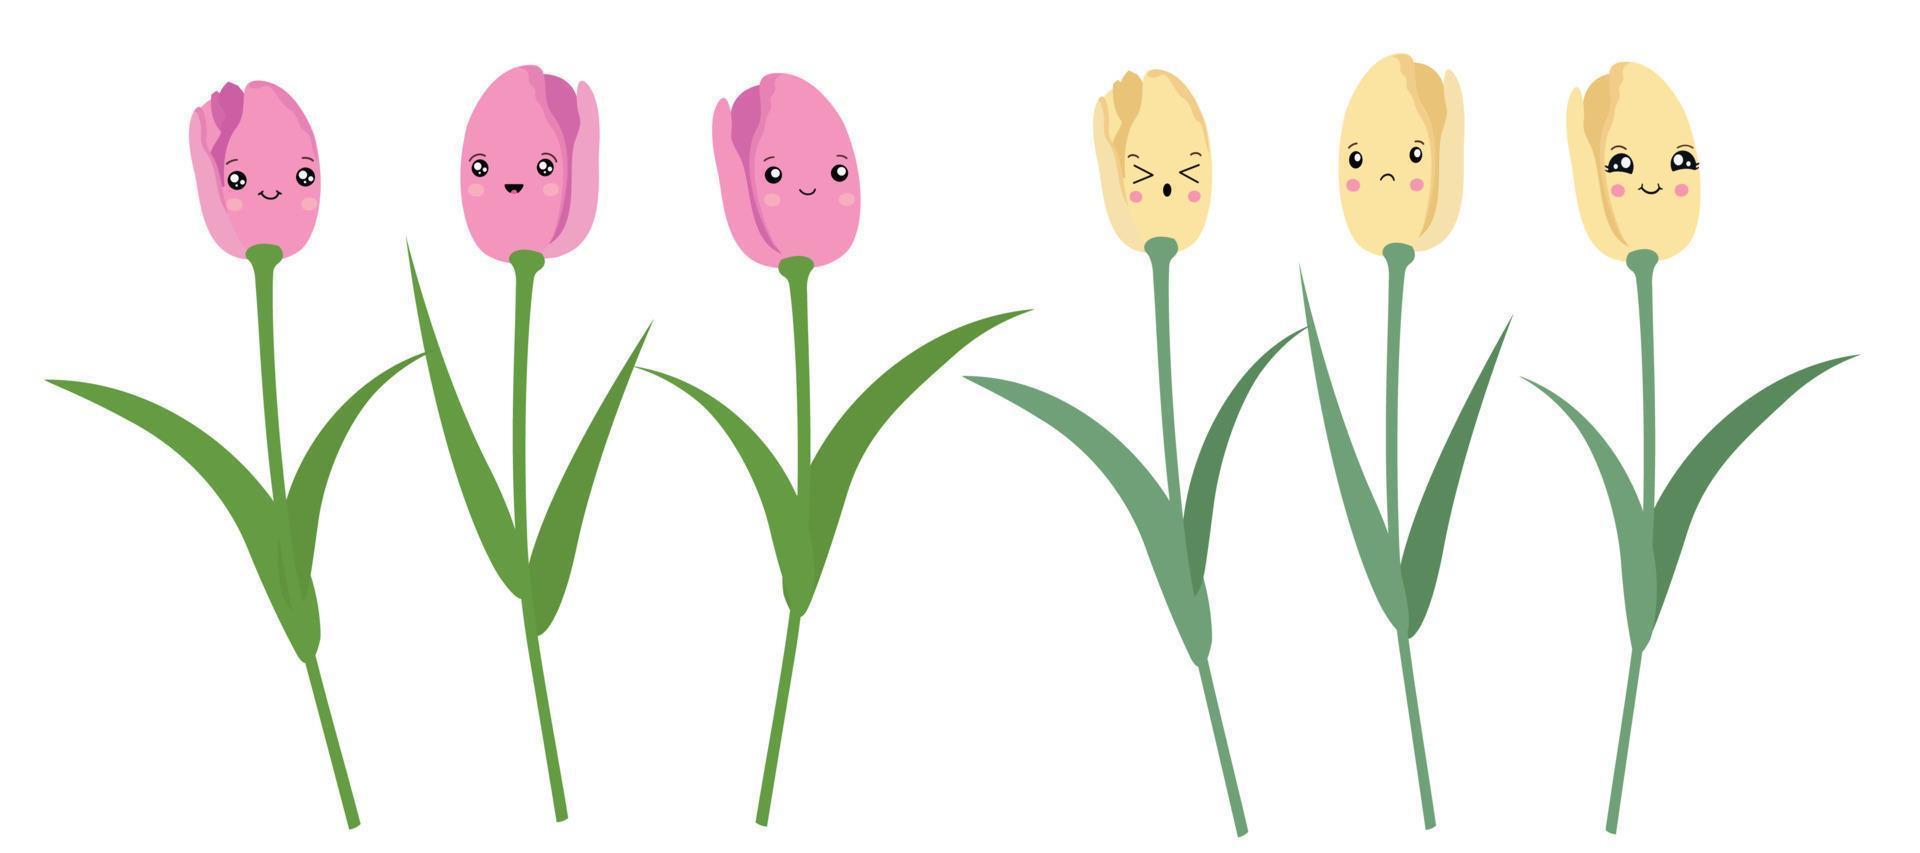 ensemble vectoriel de tulipes roses et jaunes isolées. tulipes dans le style de kawaii.